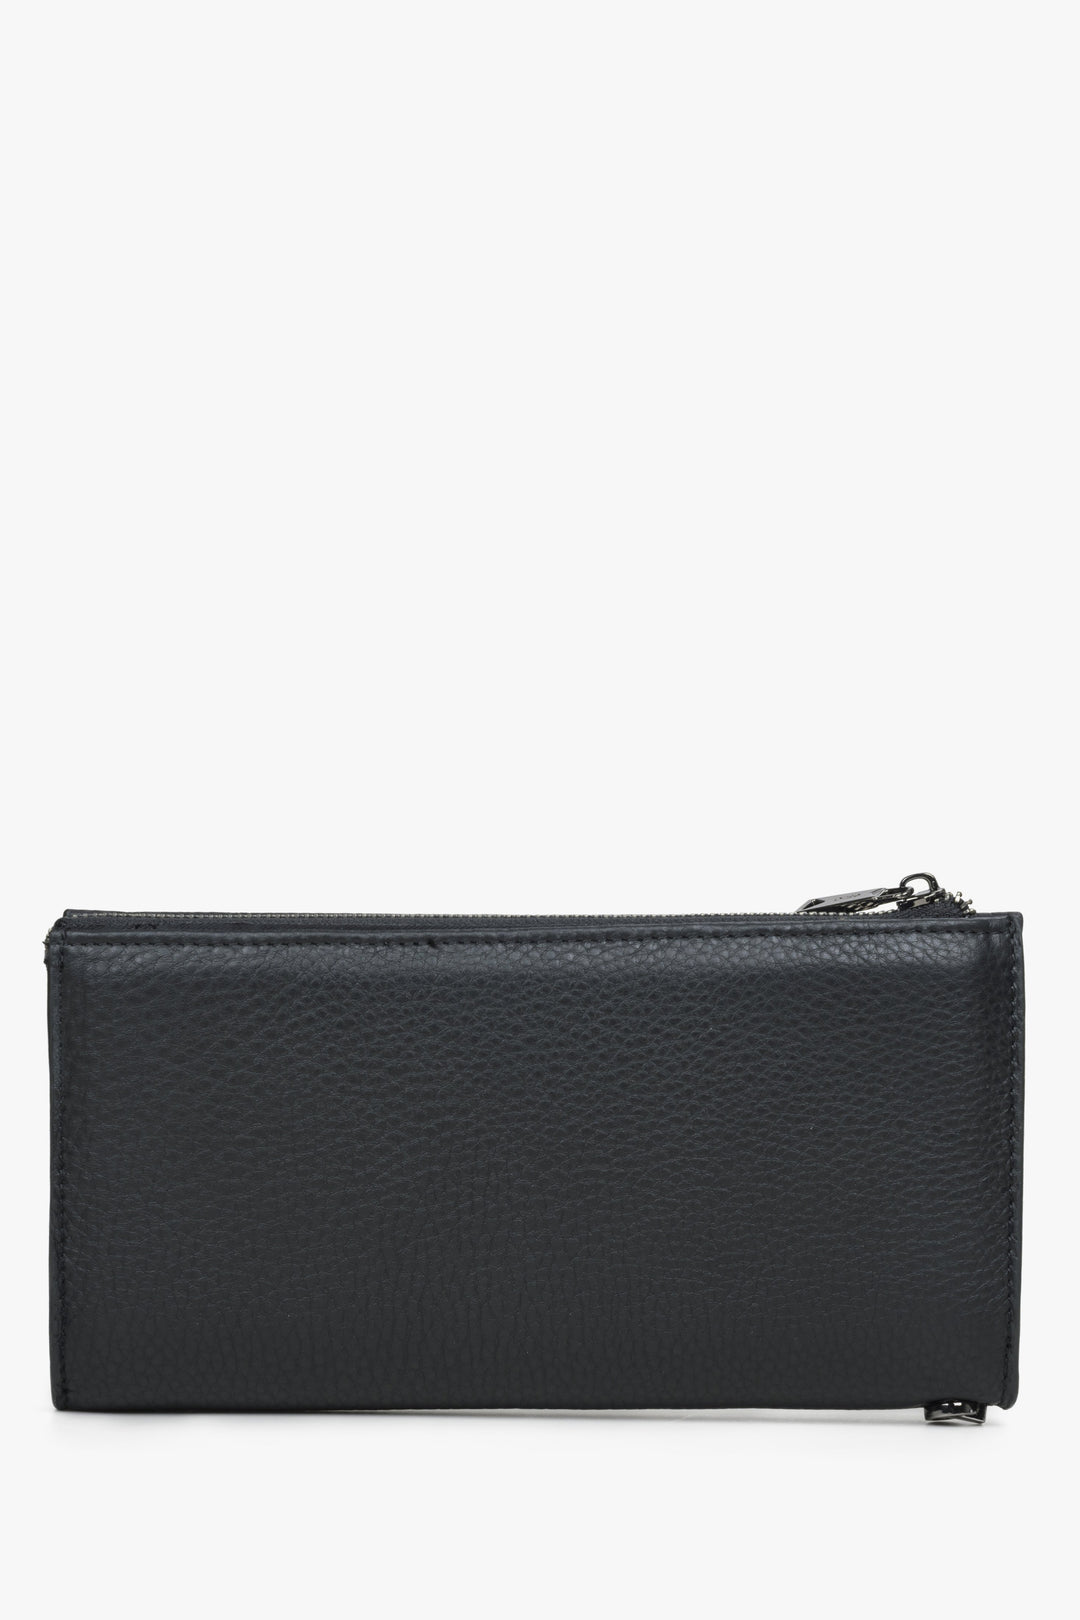 Large format black leather men's wallet - back.